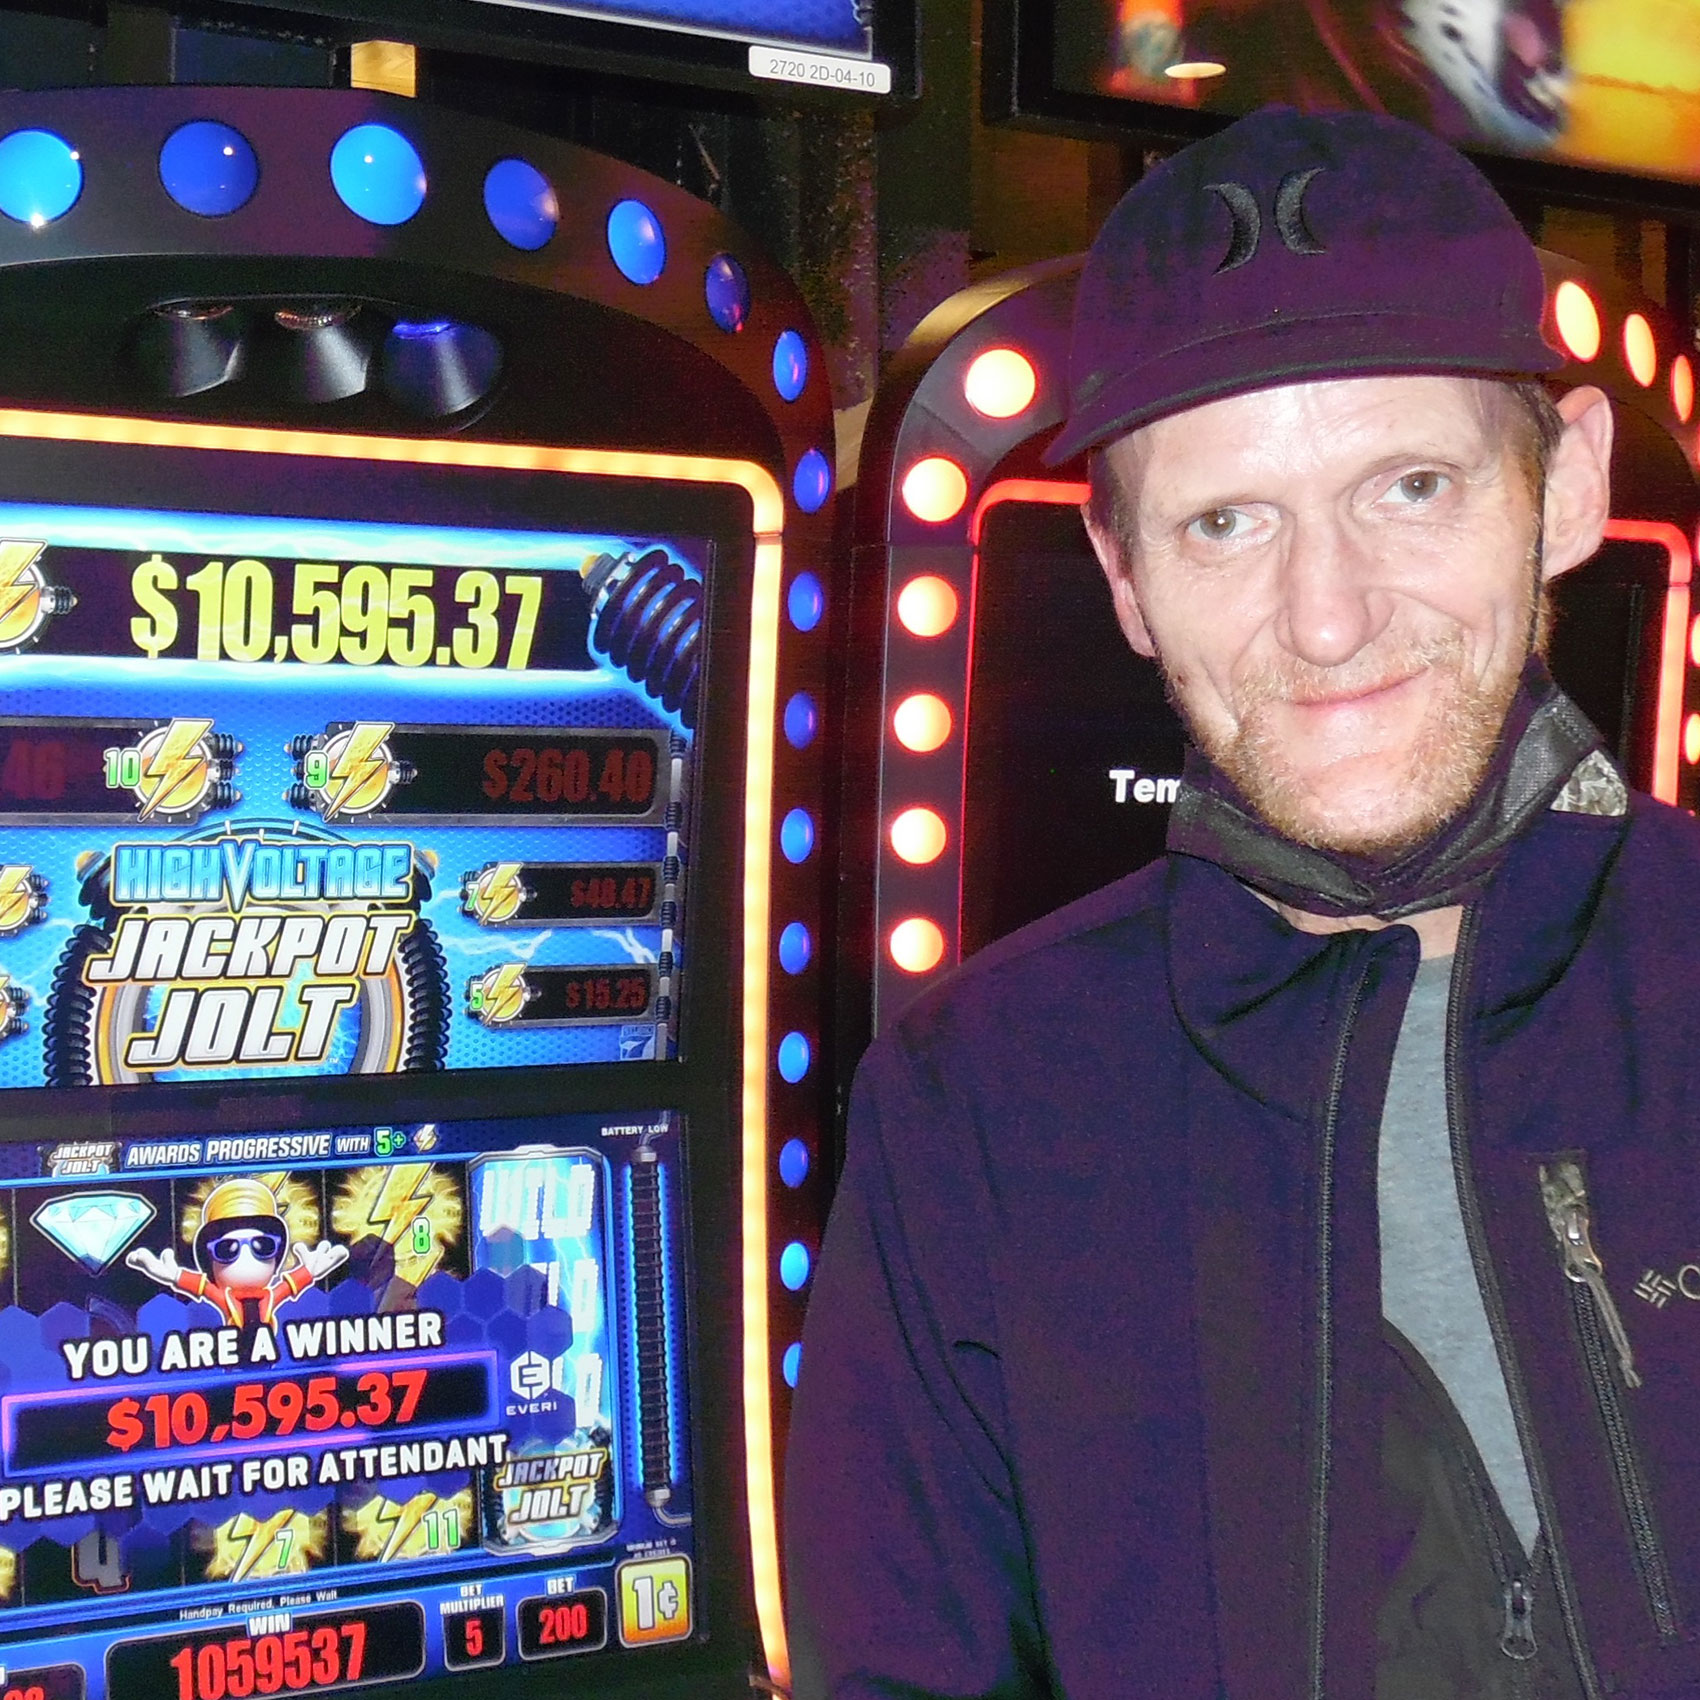 Tim, Jackpot winner at 7th Street Casino